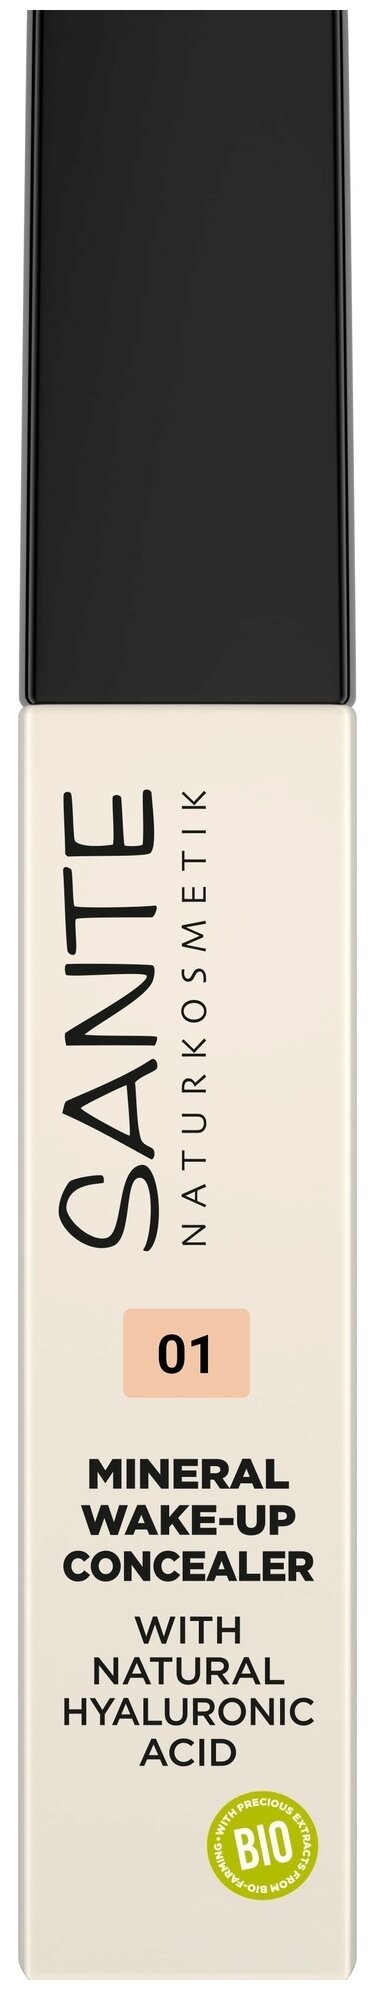 Sante Mineral Wake-up Concealer, оттенок 01 neutral ivory